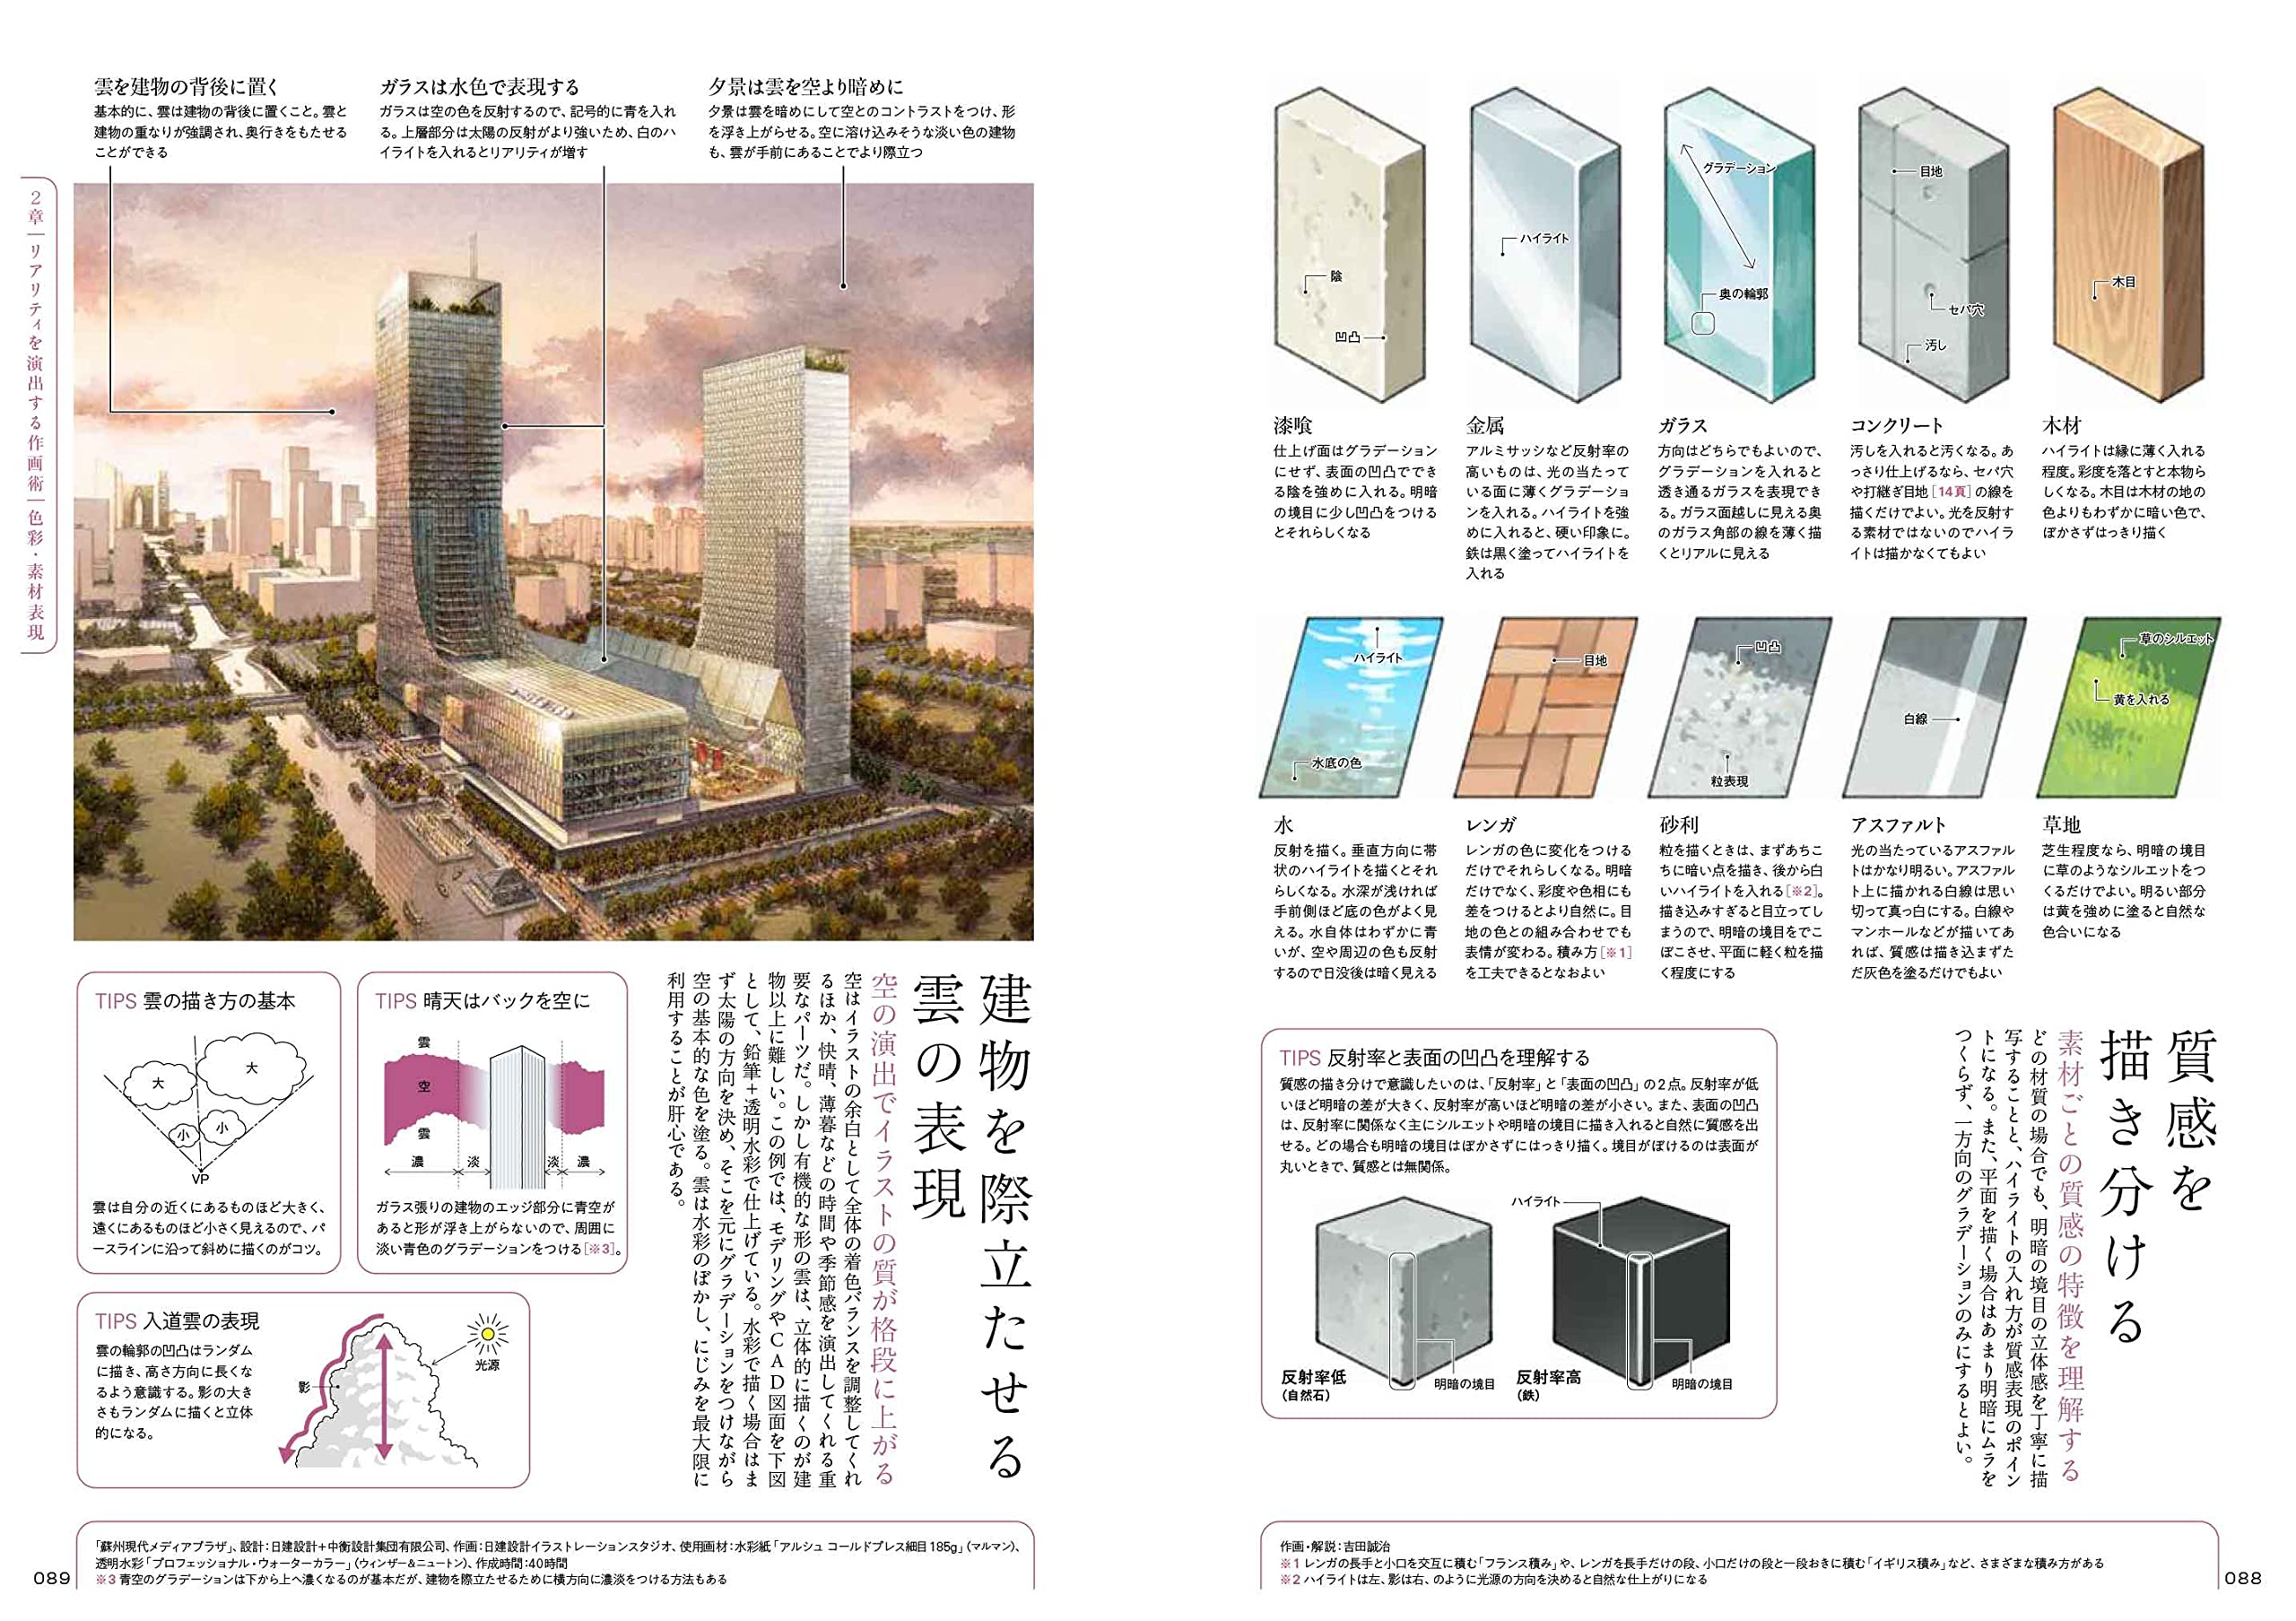 リフォームブックス 最高の建物と街を描く技術 B5判208頁